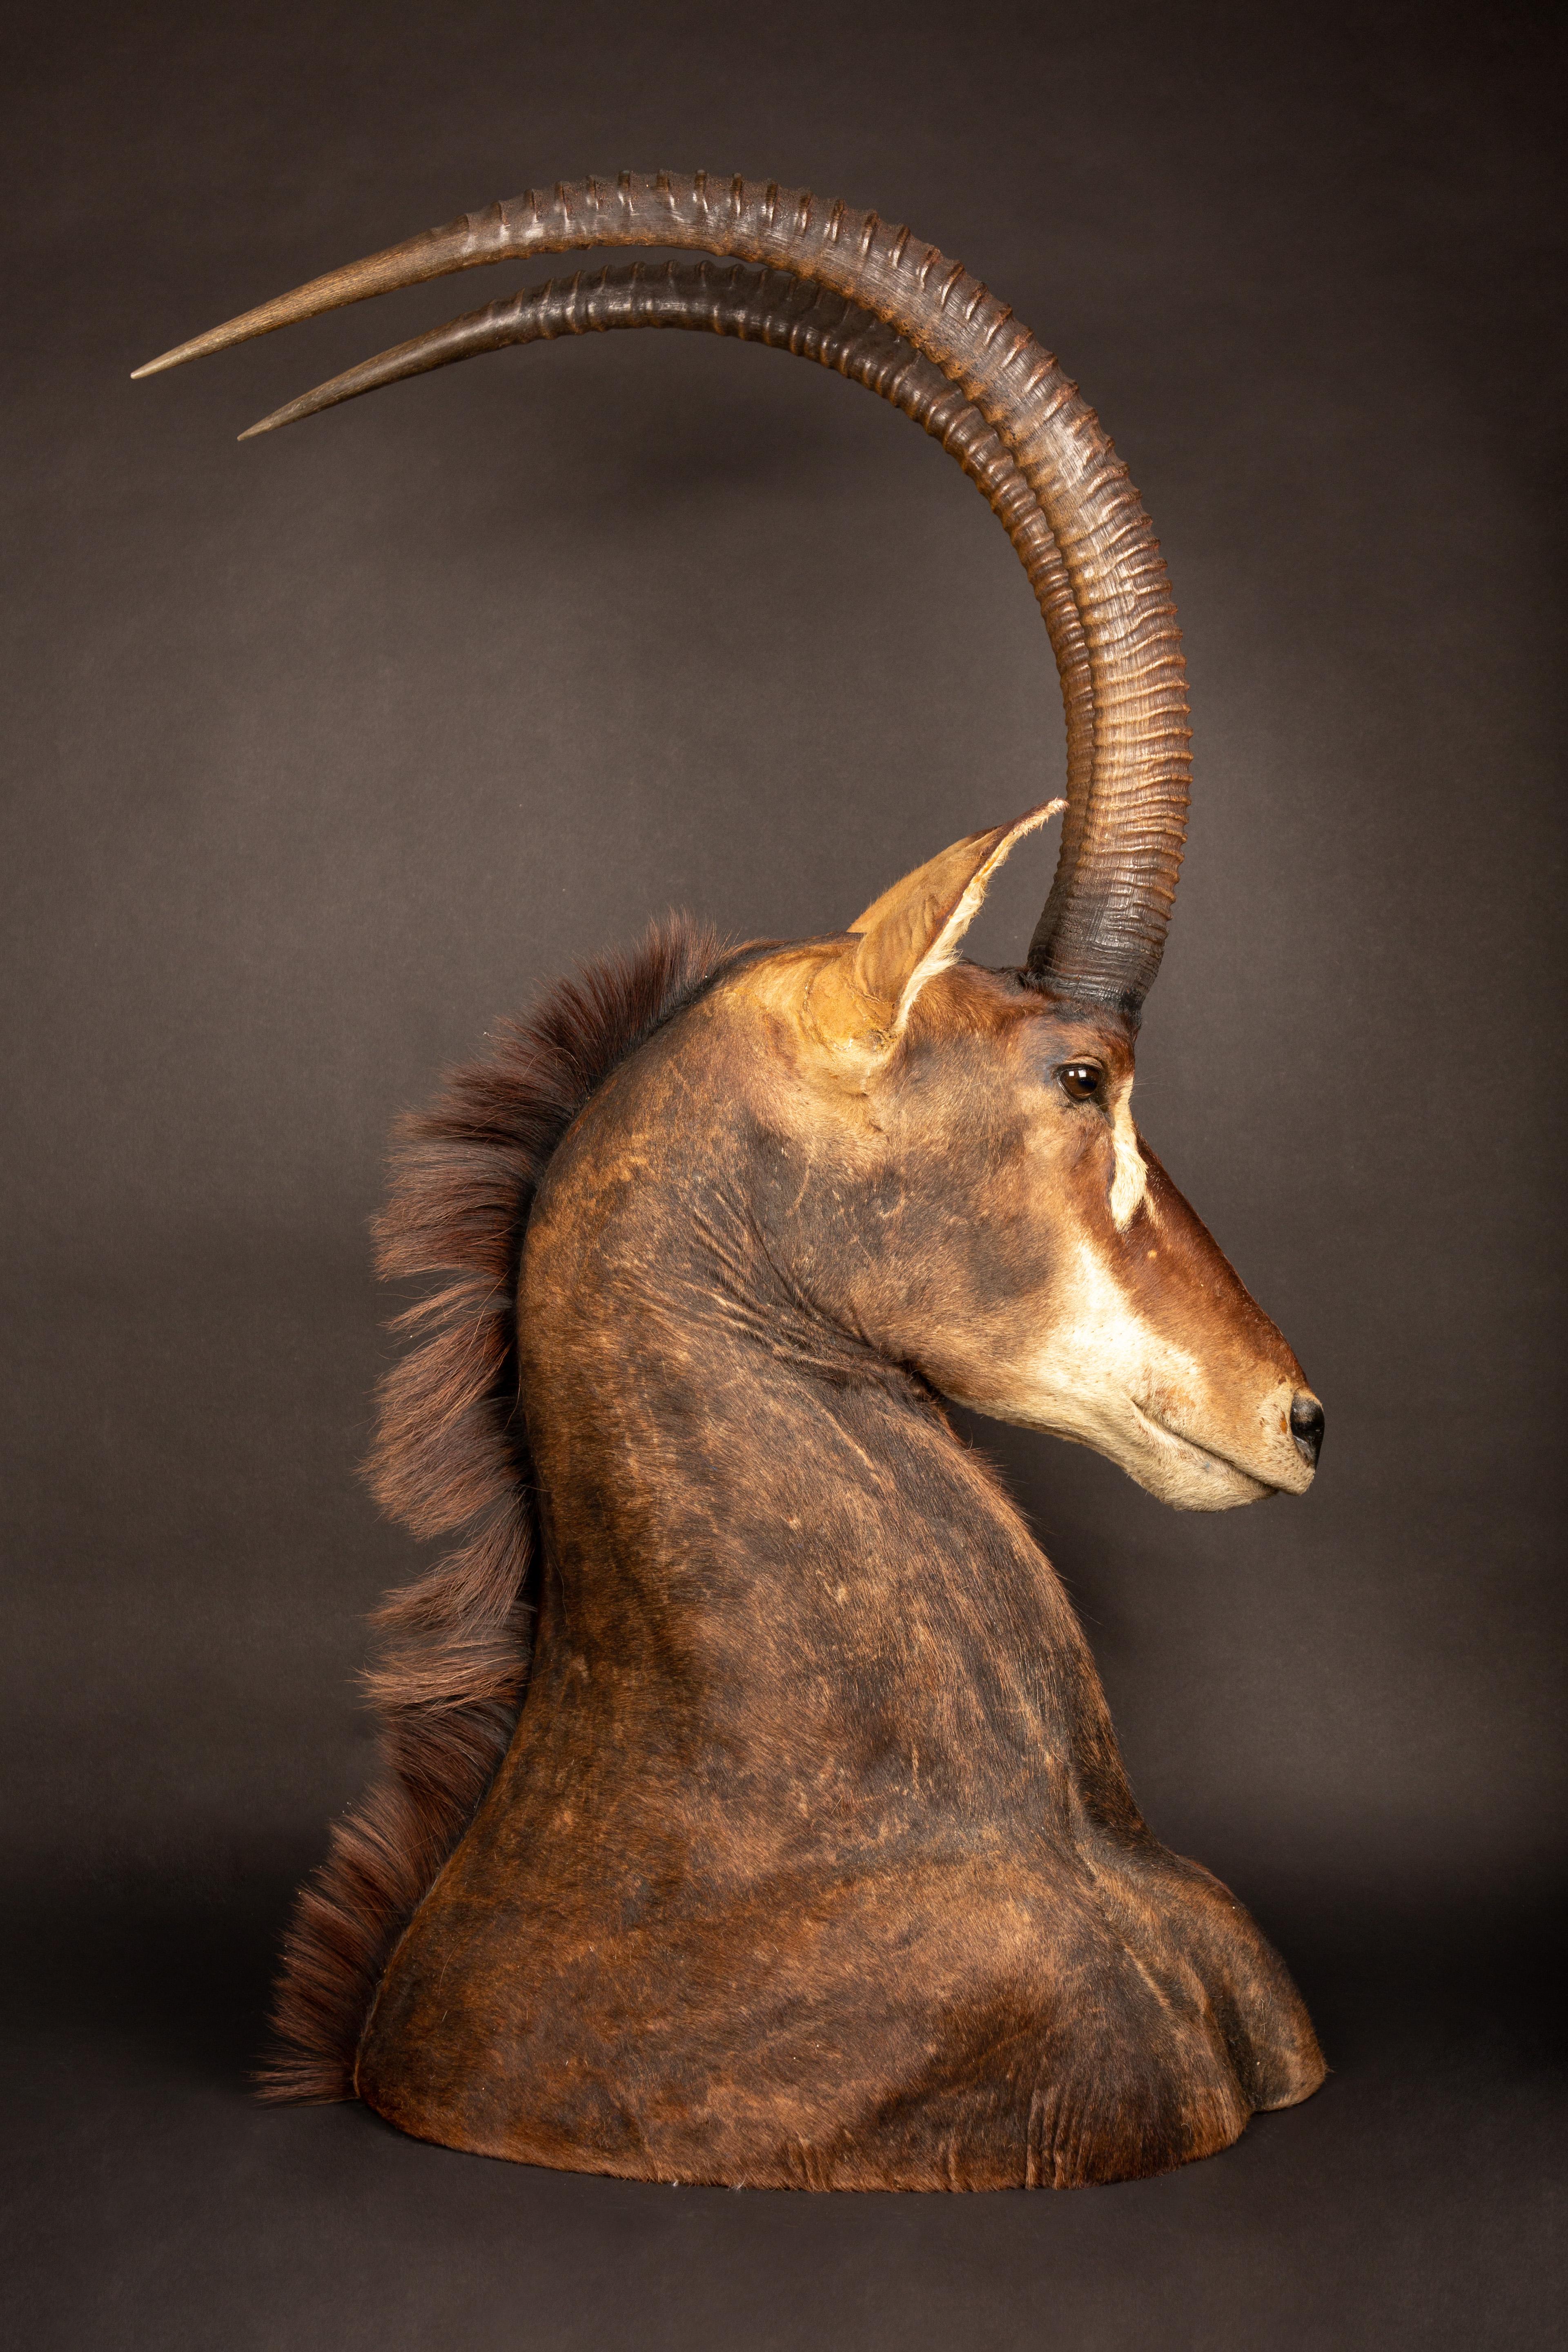 sable antelope skull